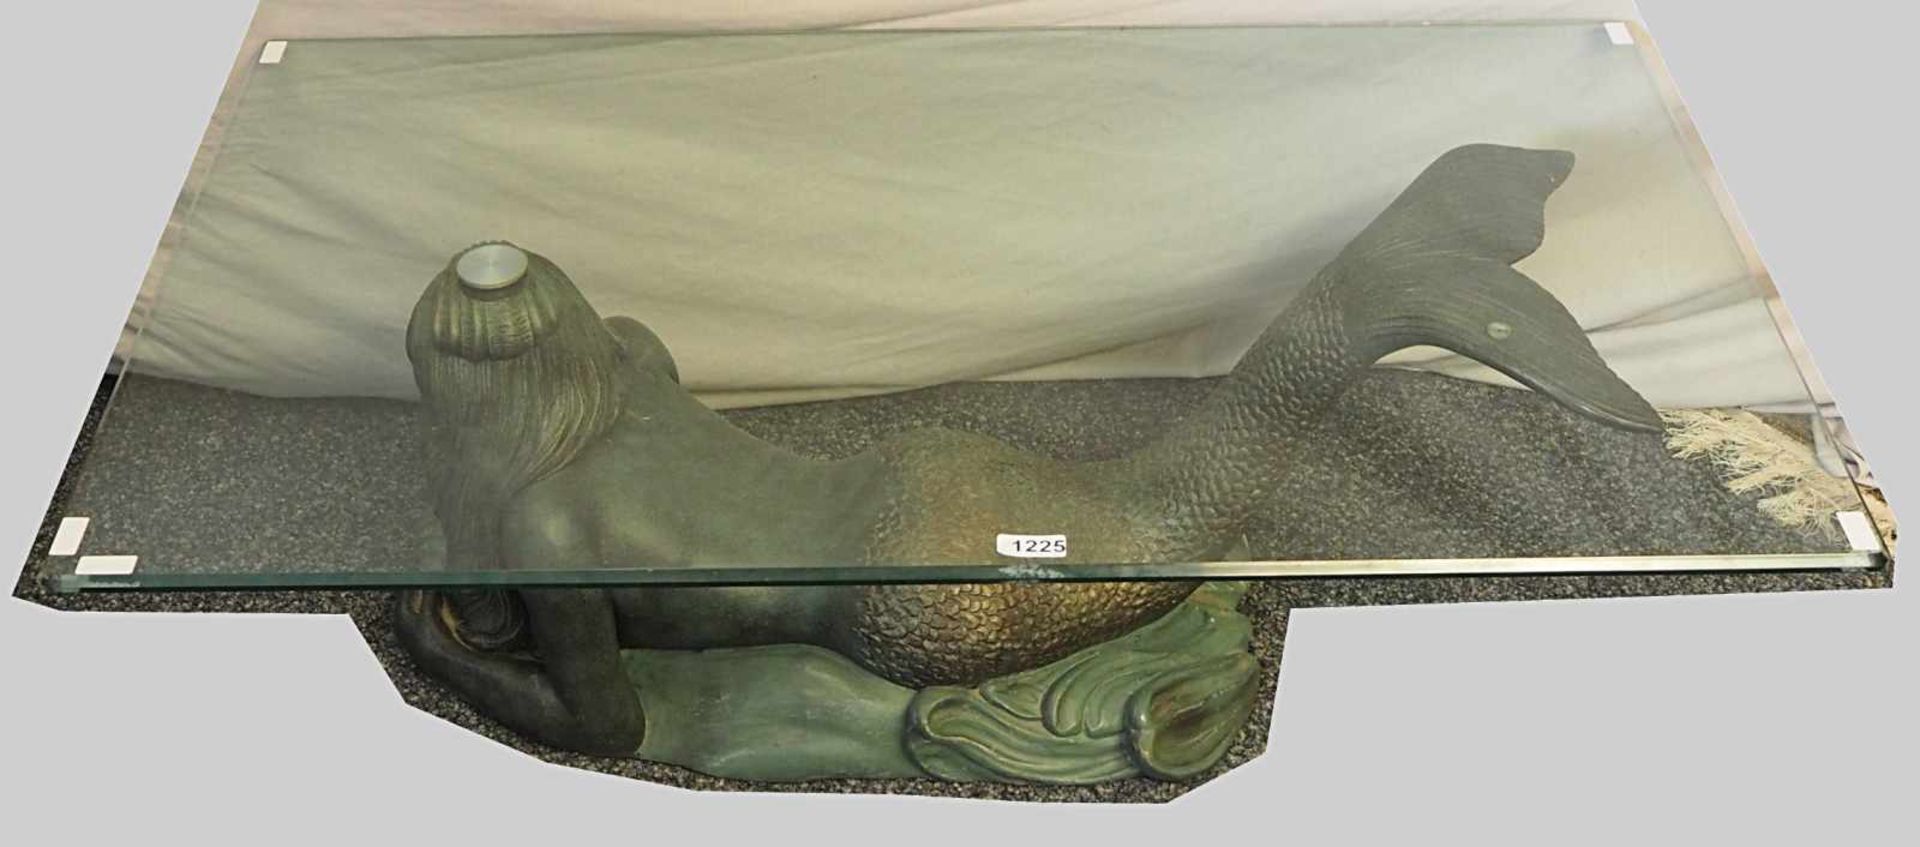 1 Couchtisch "Liegende Meerjungfrau"Bronze patiniert m. Glaspl. ca. 45x125x74cm Asp. - Bild 2 aus 2